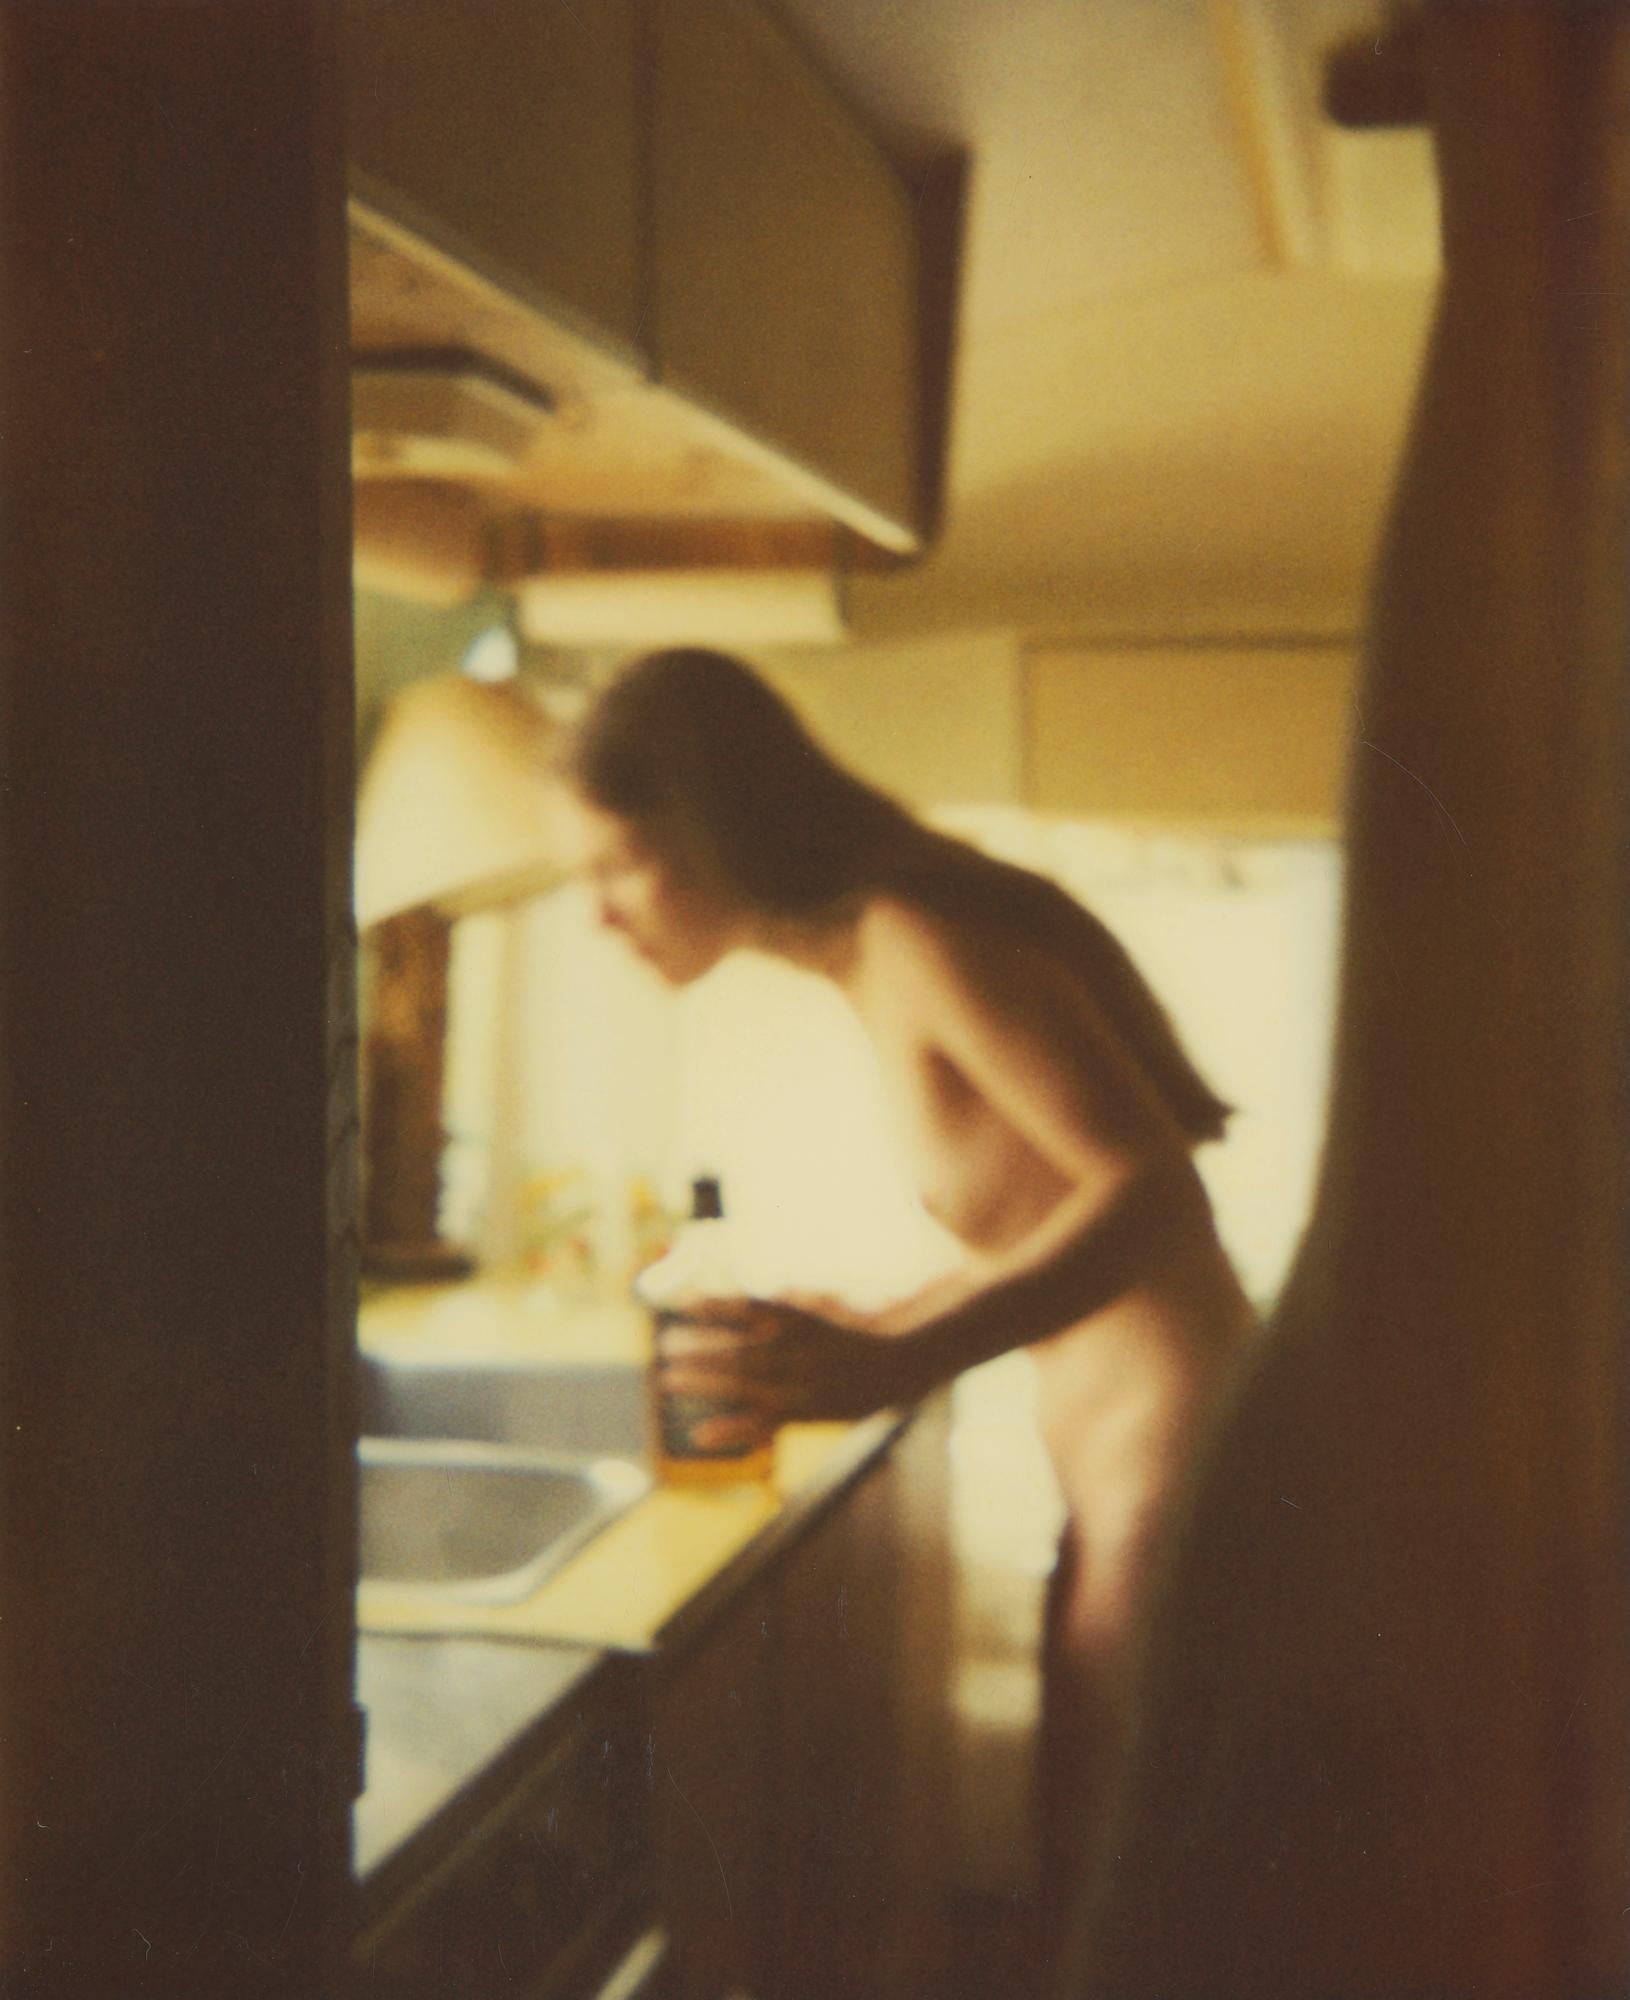 Whisky and Water VI (Sidewinder) - Diptychon, Polaroid, Akt, 21. Jahrhundert, Farbe – Photograph von Stefanie Schneider